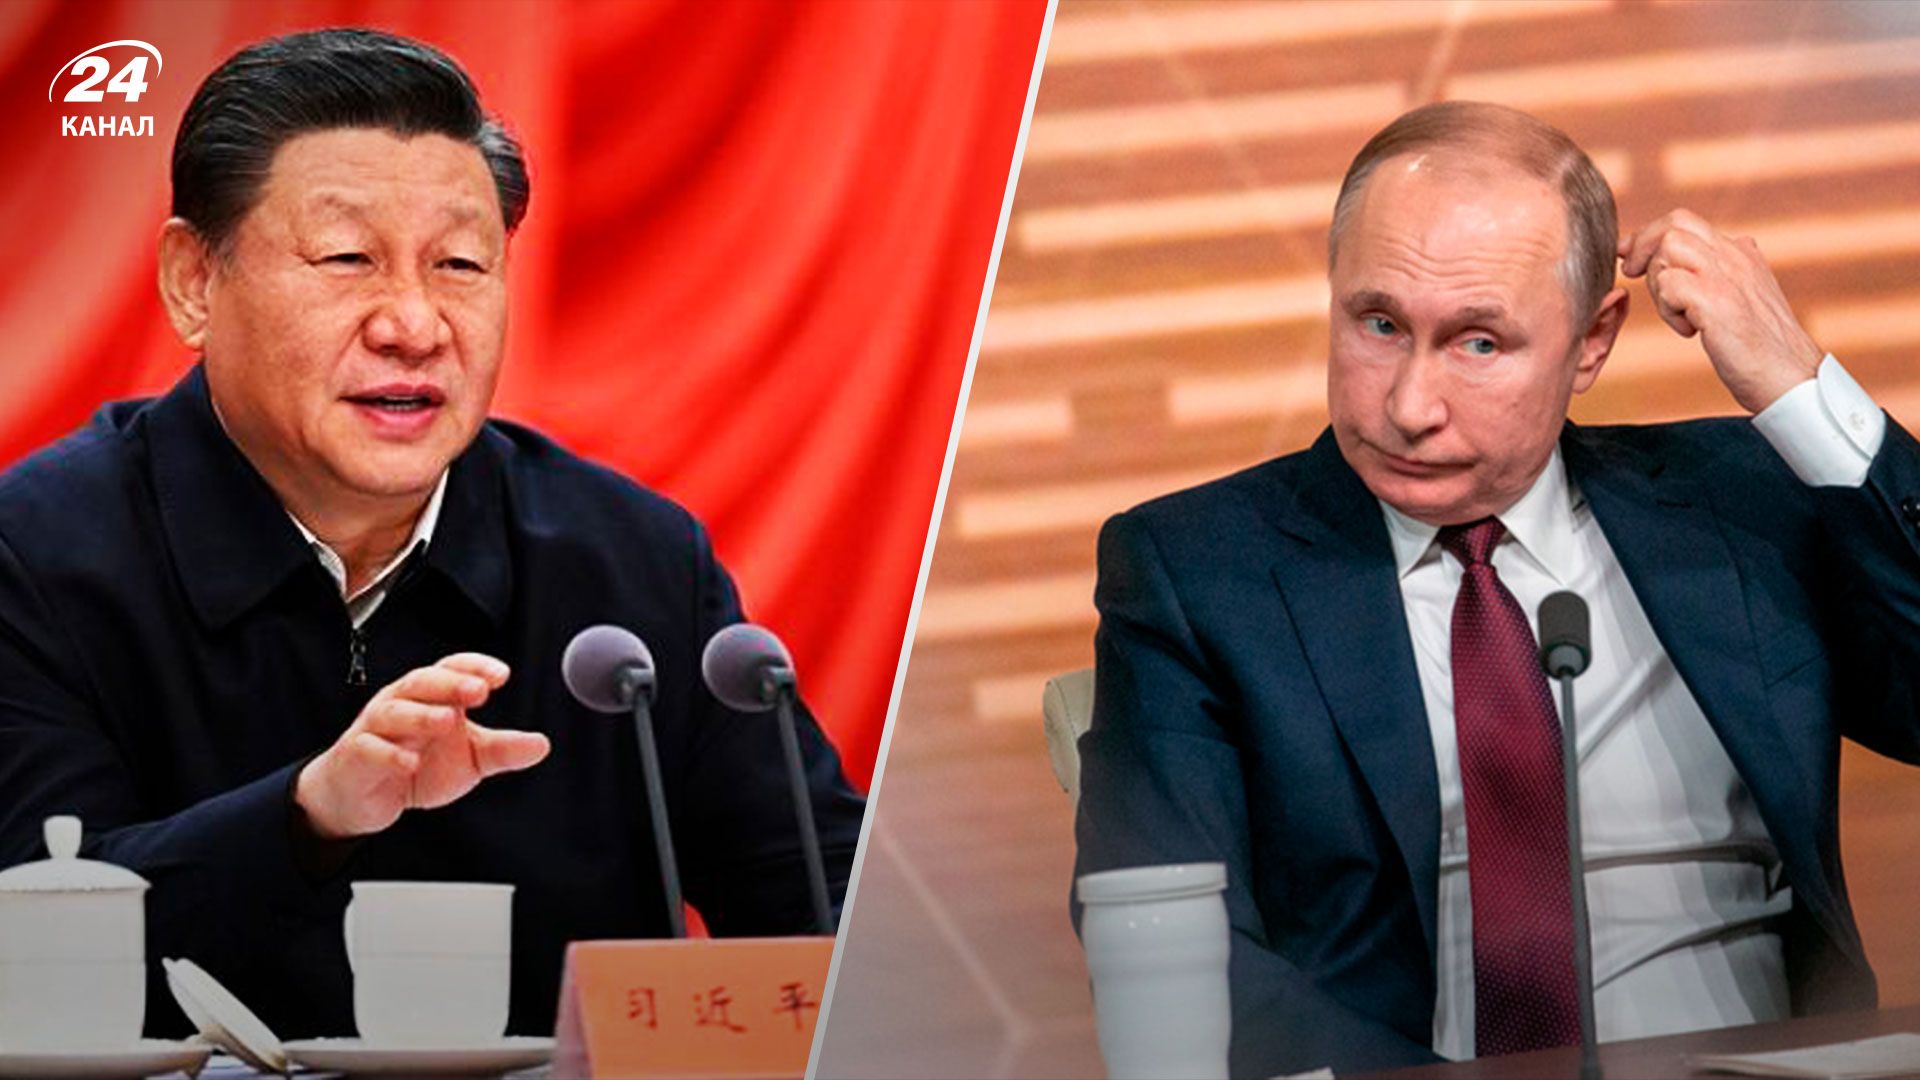 Ядерные угрозы России - сможет ли Китай повлиять на Путина - 24 Канал